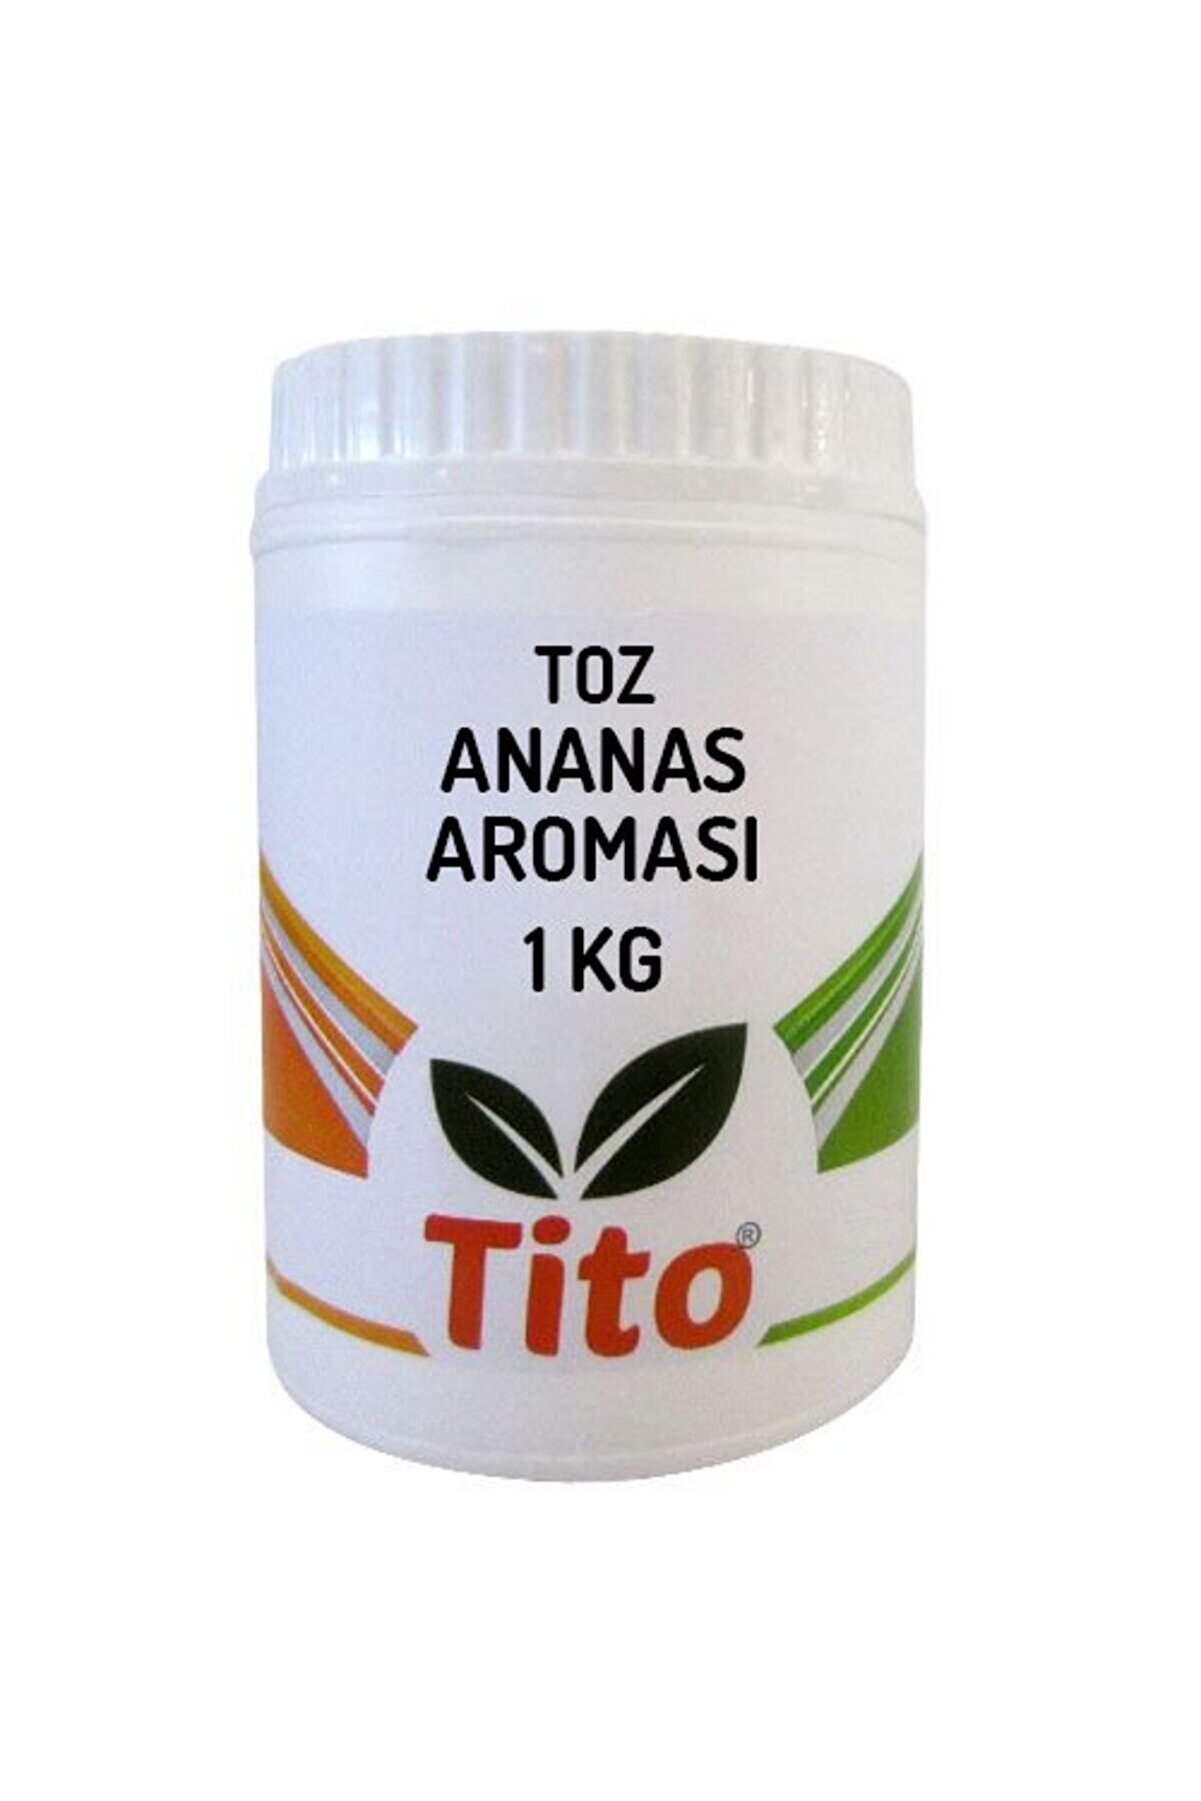 tito Toz Ananas Aroması 1 Kg